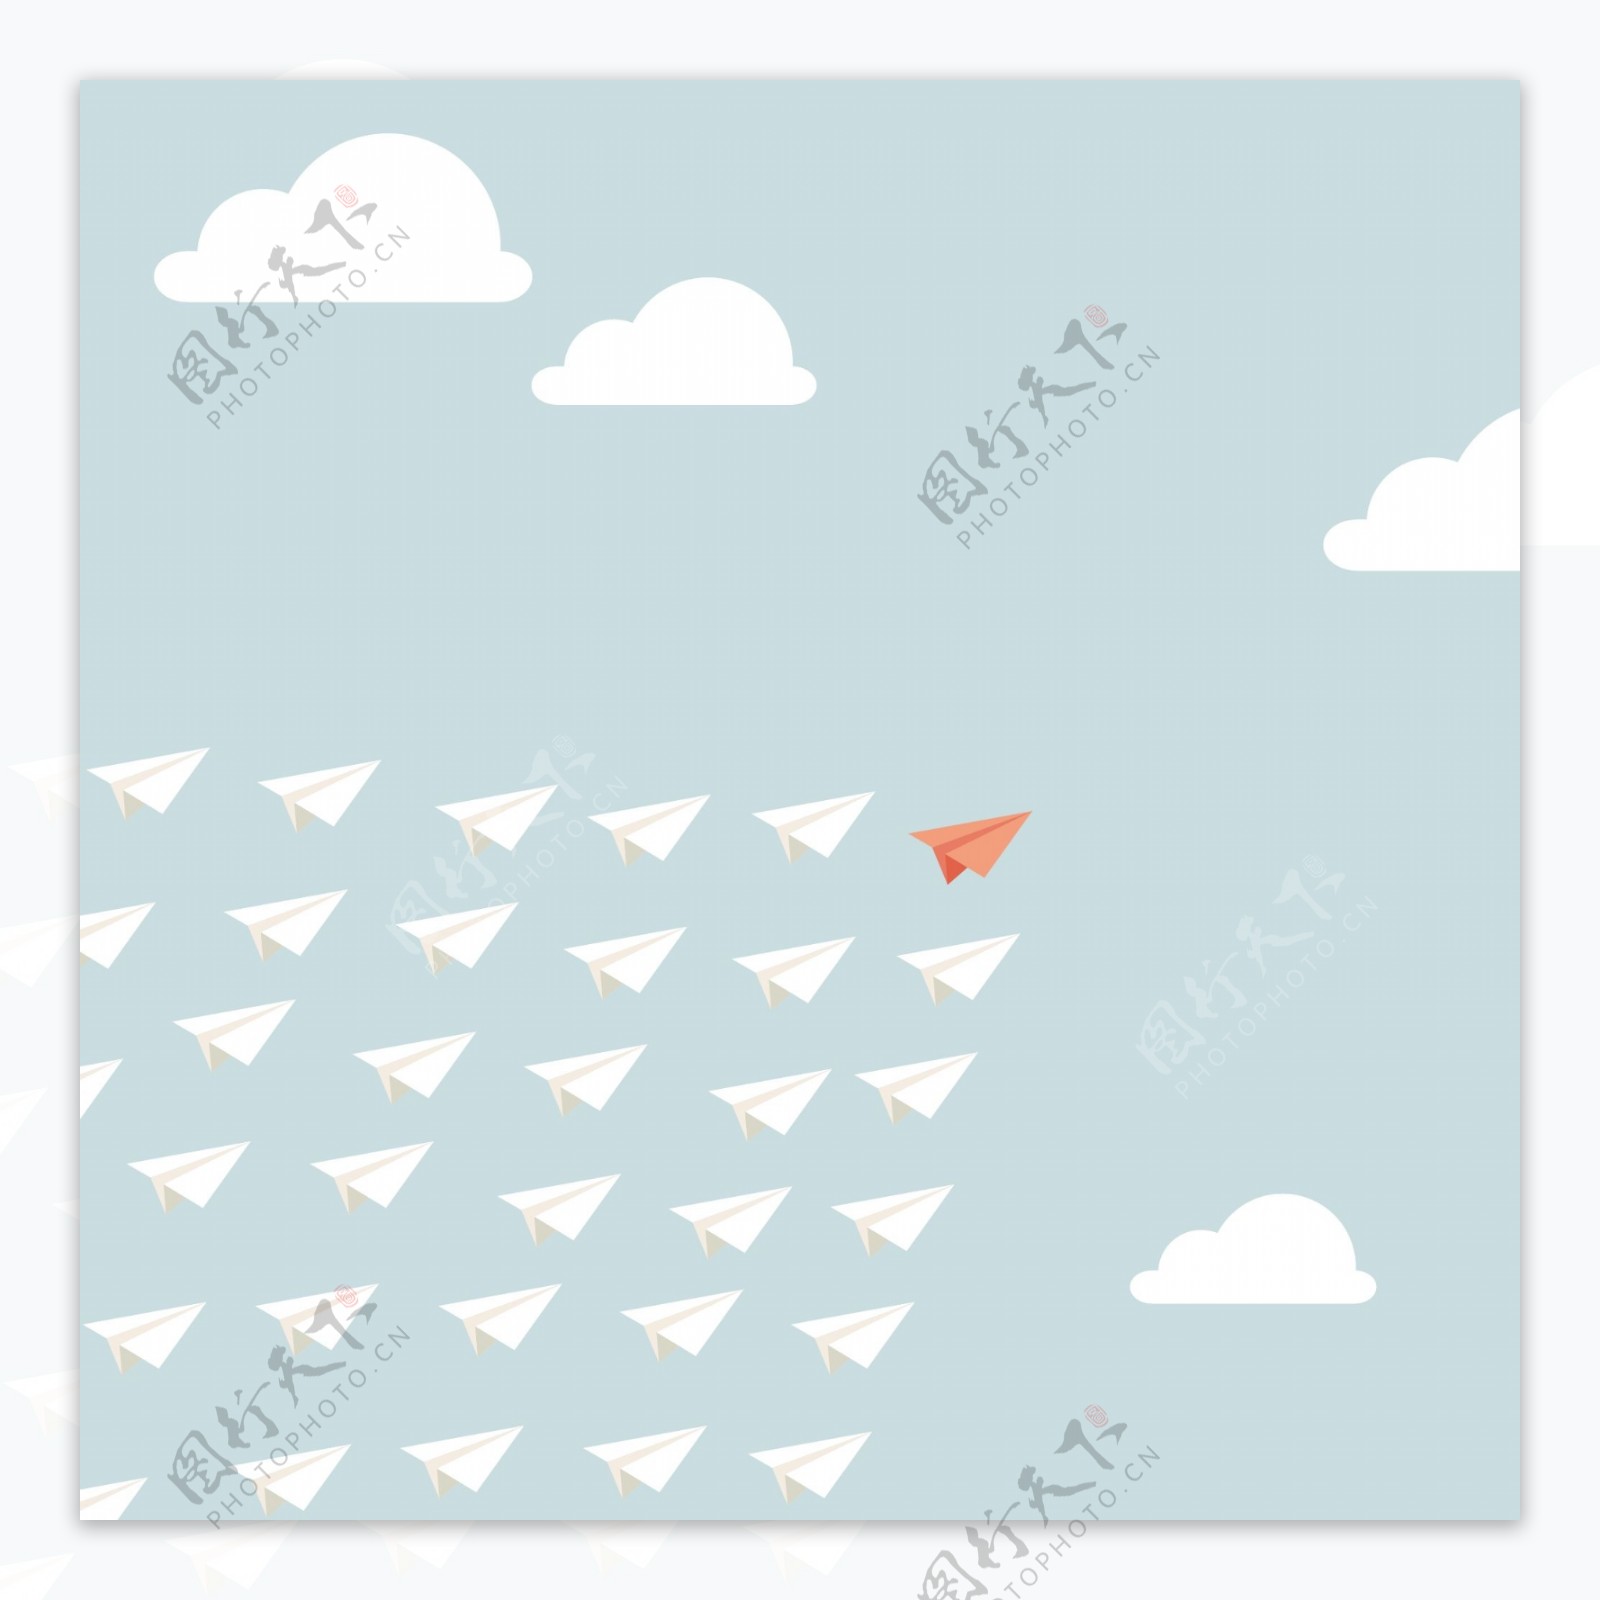 纸飞机在天空中飞翔